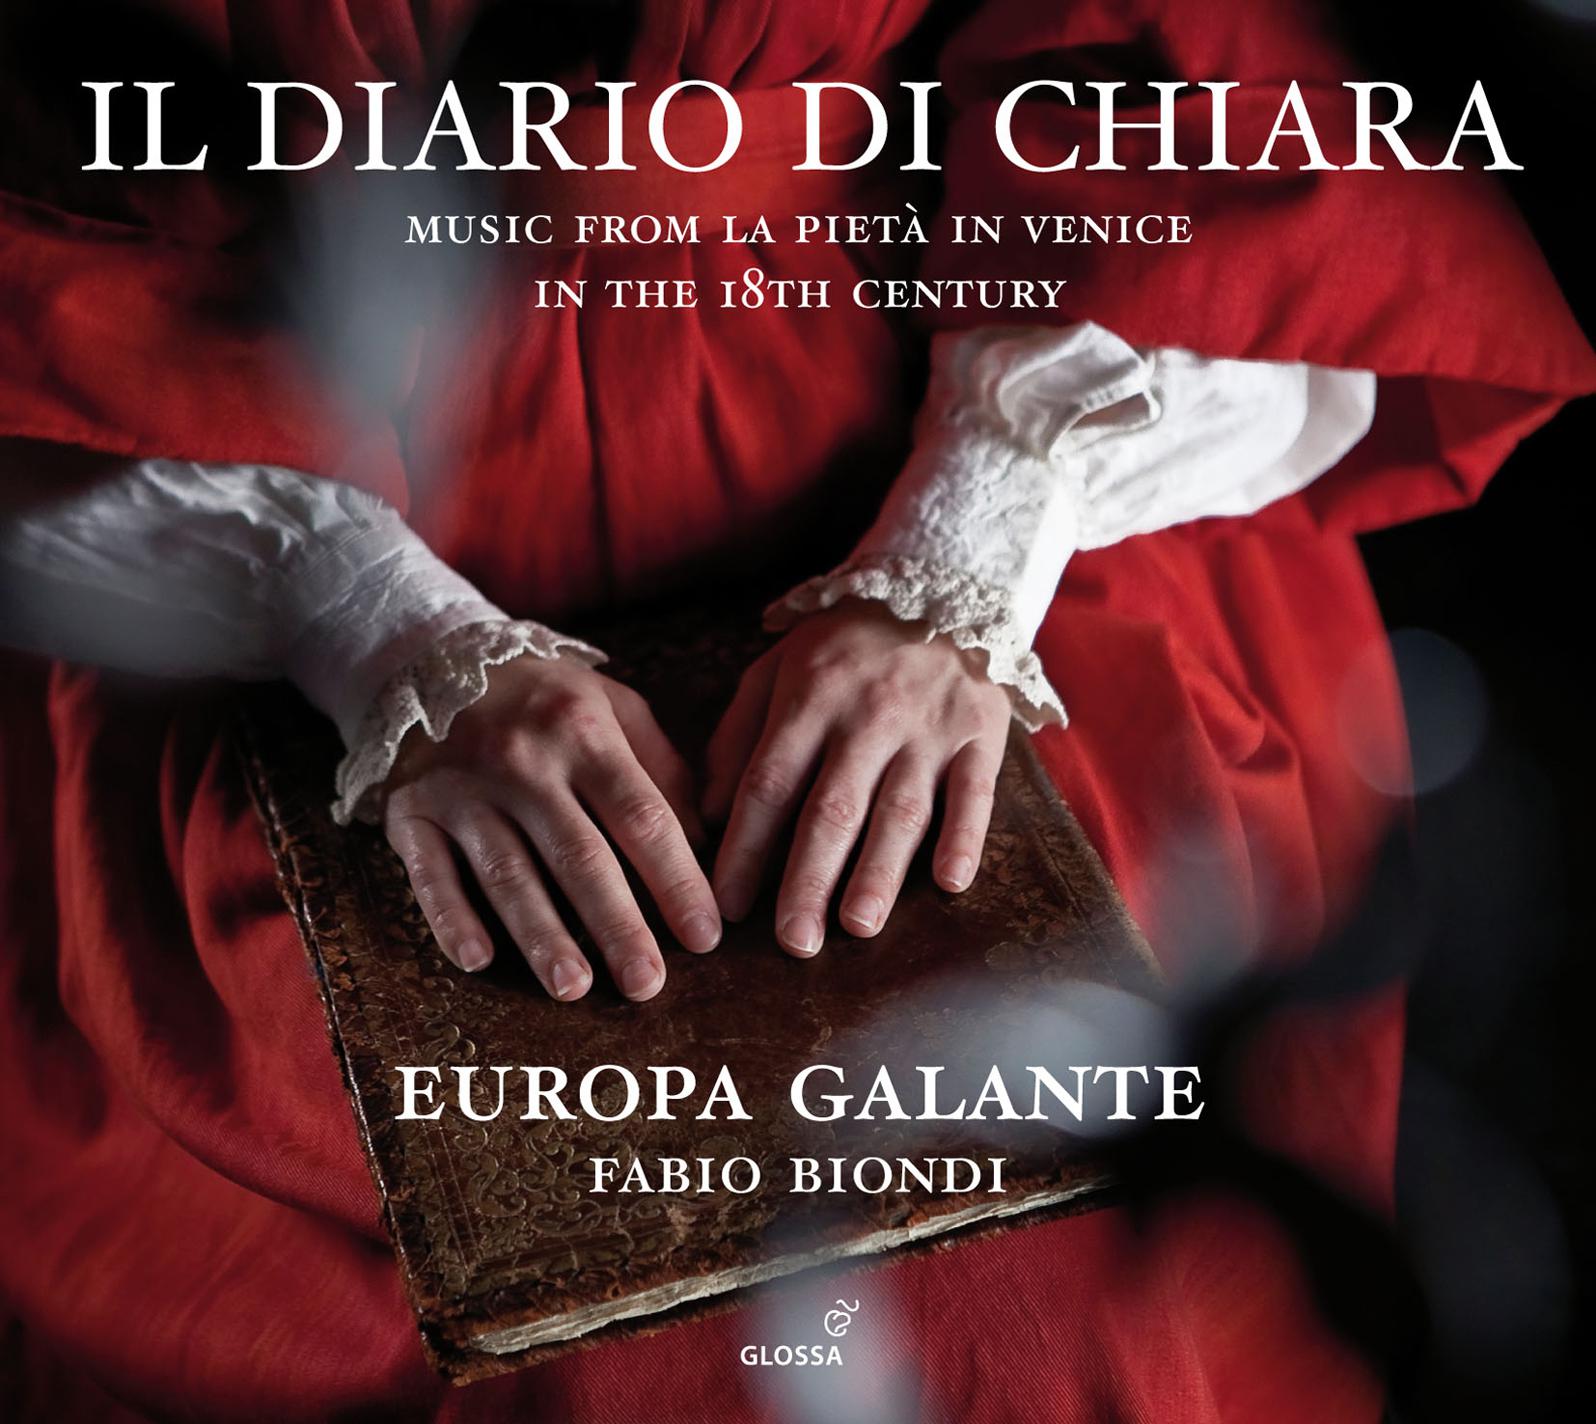 Concerto for Viola d'amore and Strings in D Major, "Per la S.ra Chiaretta": I. Allegro Assai